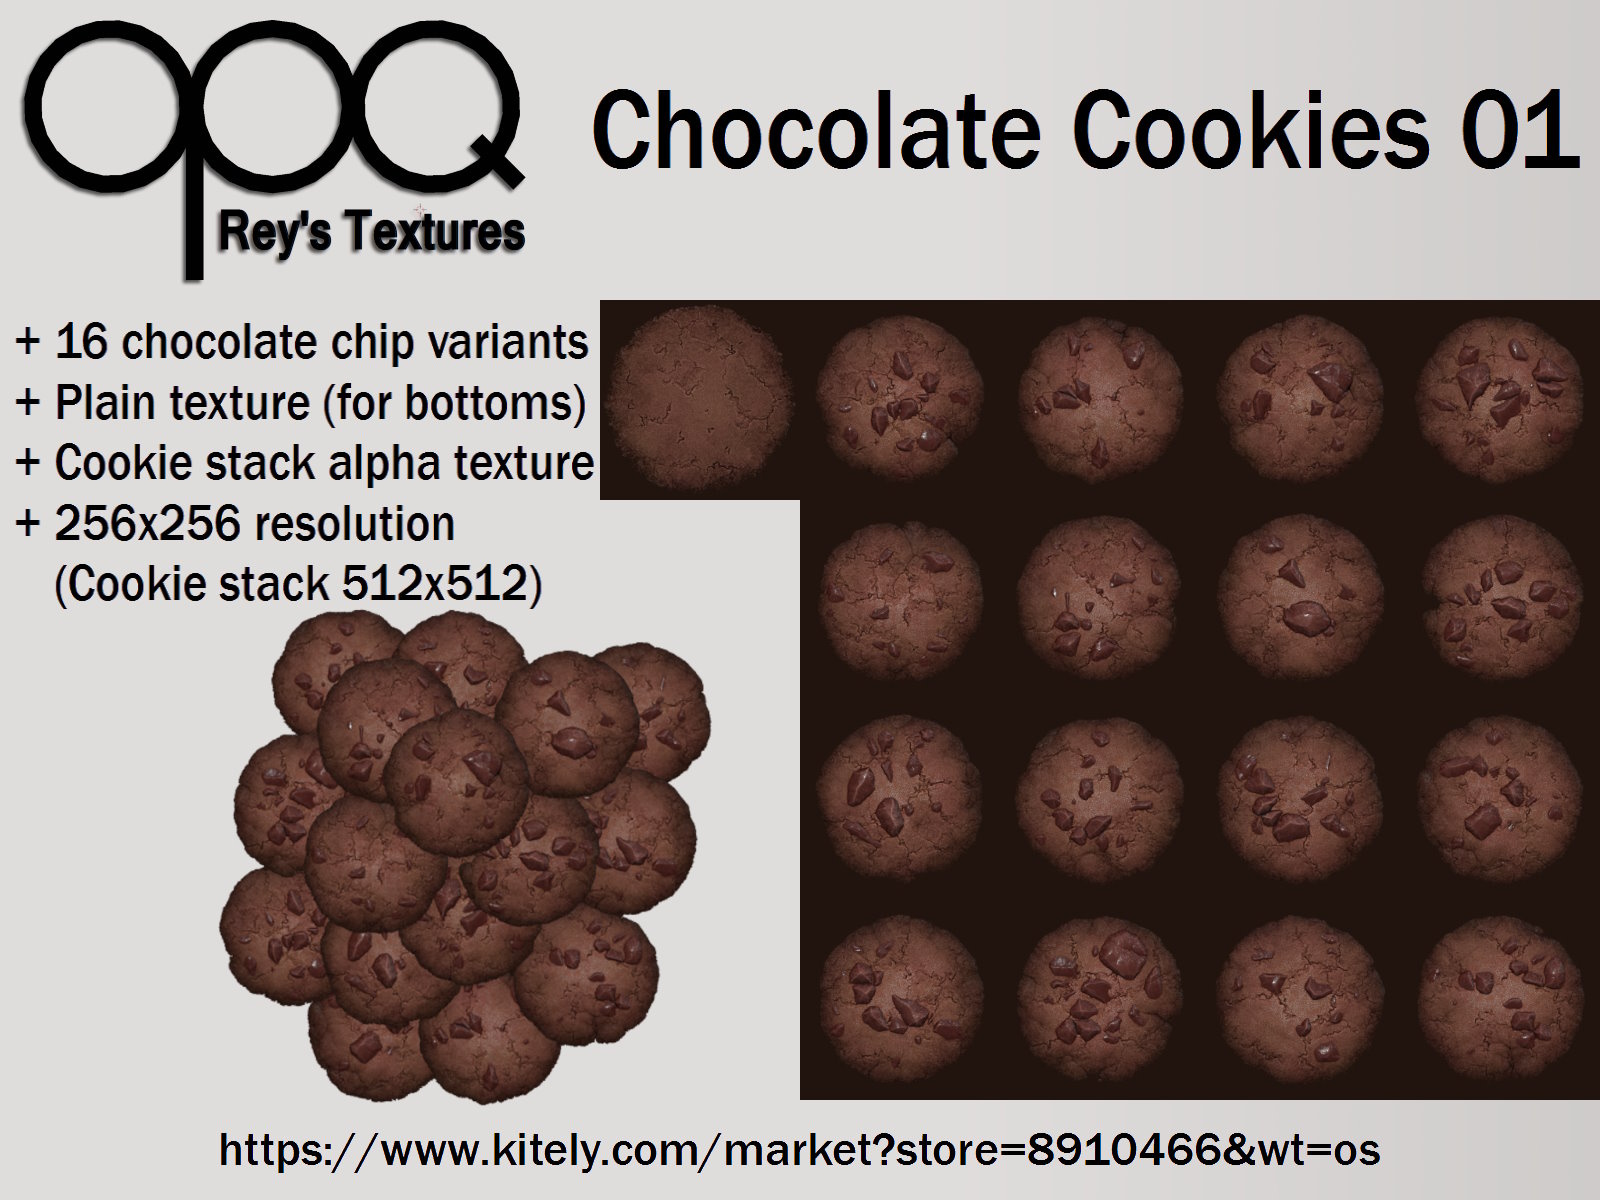 Rey's Chocolate Cookies 01 Poster Kitely.jpg